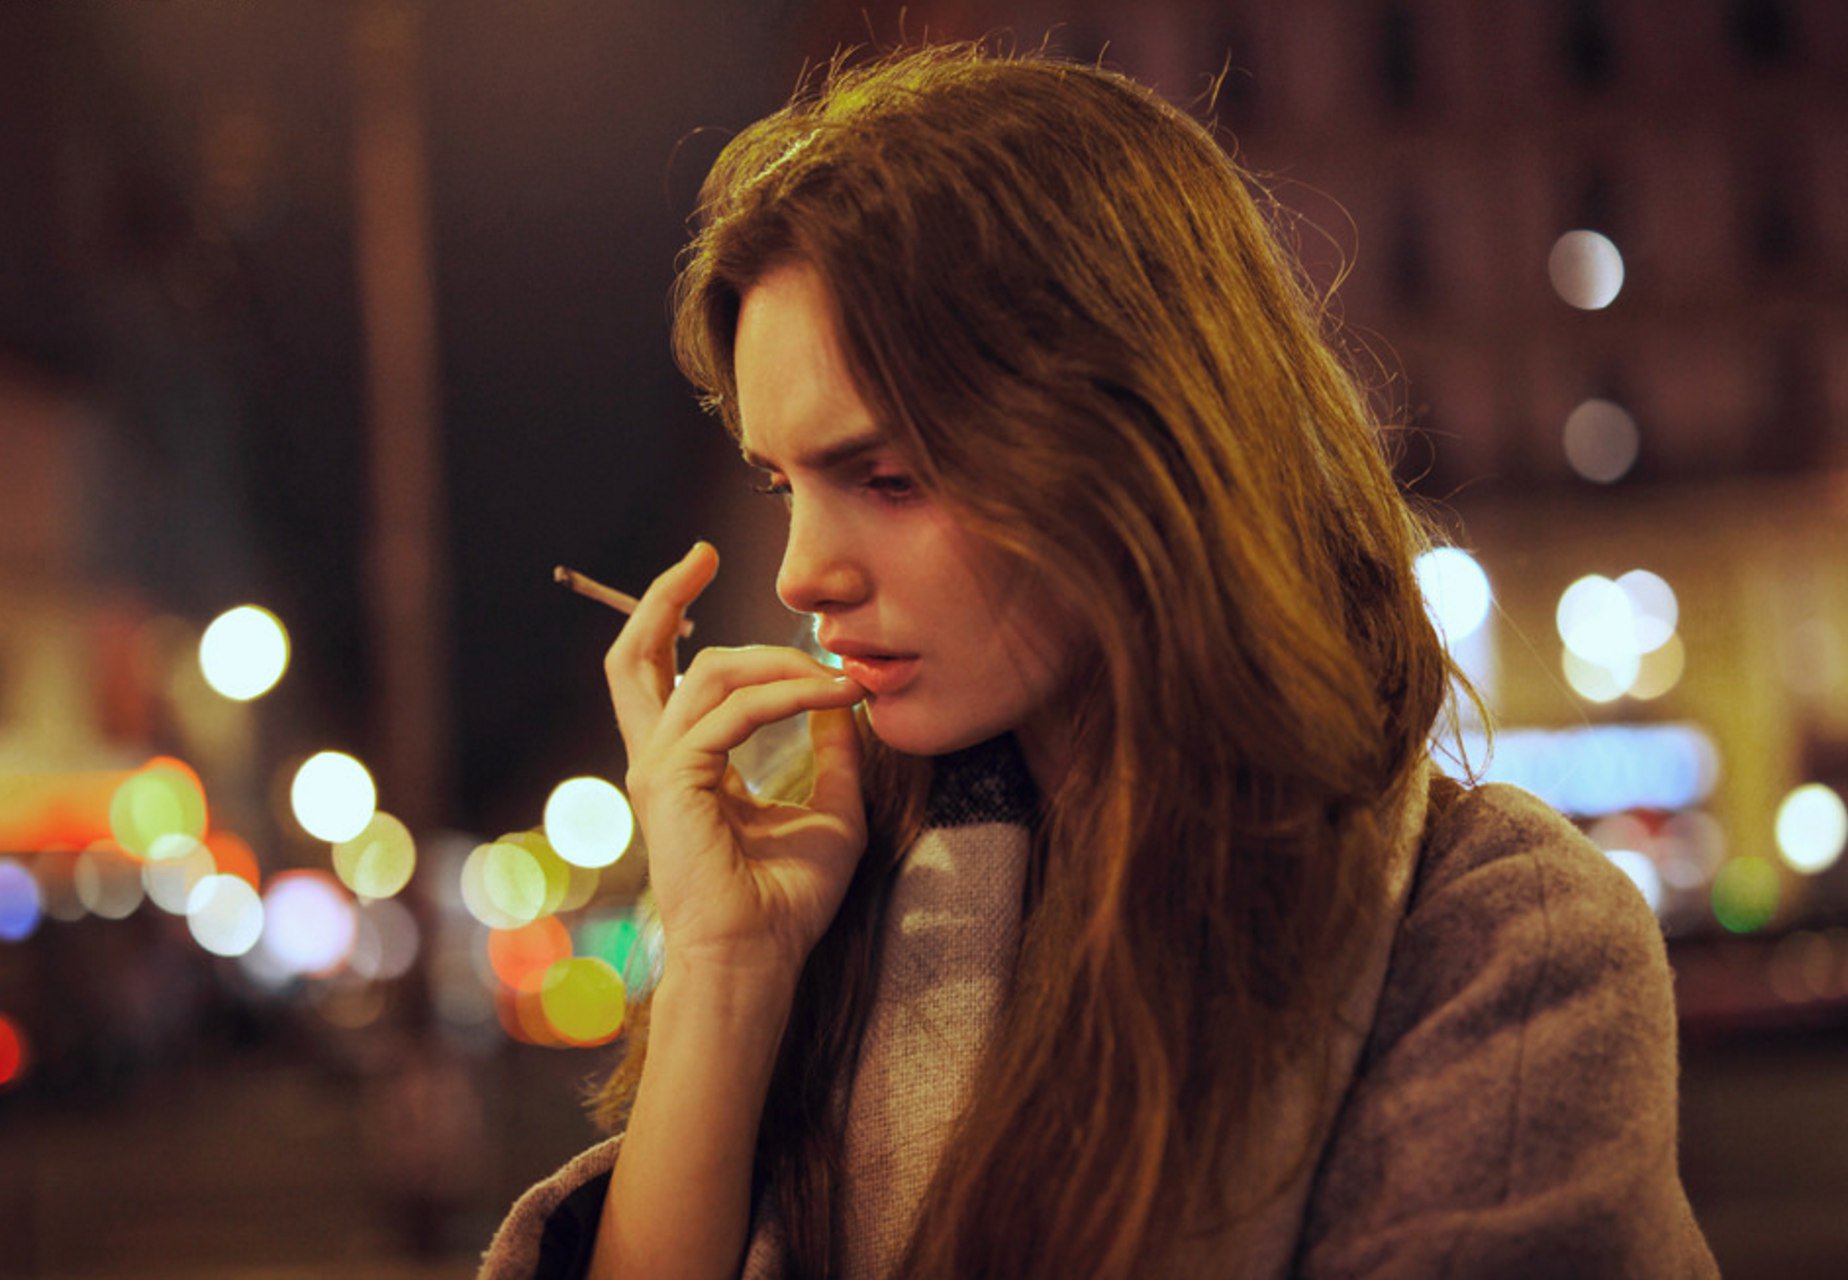 Света размышляет. Задумчивая девушка. Девушка с сигаретой. Красивая задумчивая девушка. Задумчивая женщина с сигаретой.